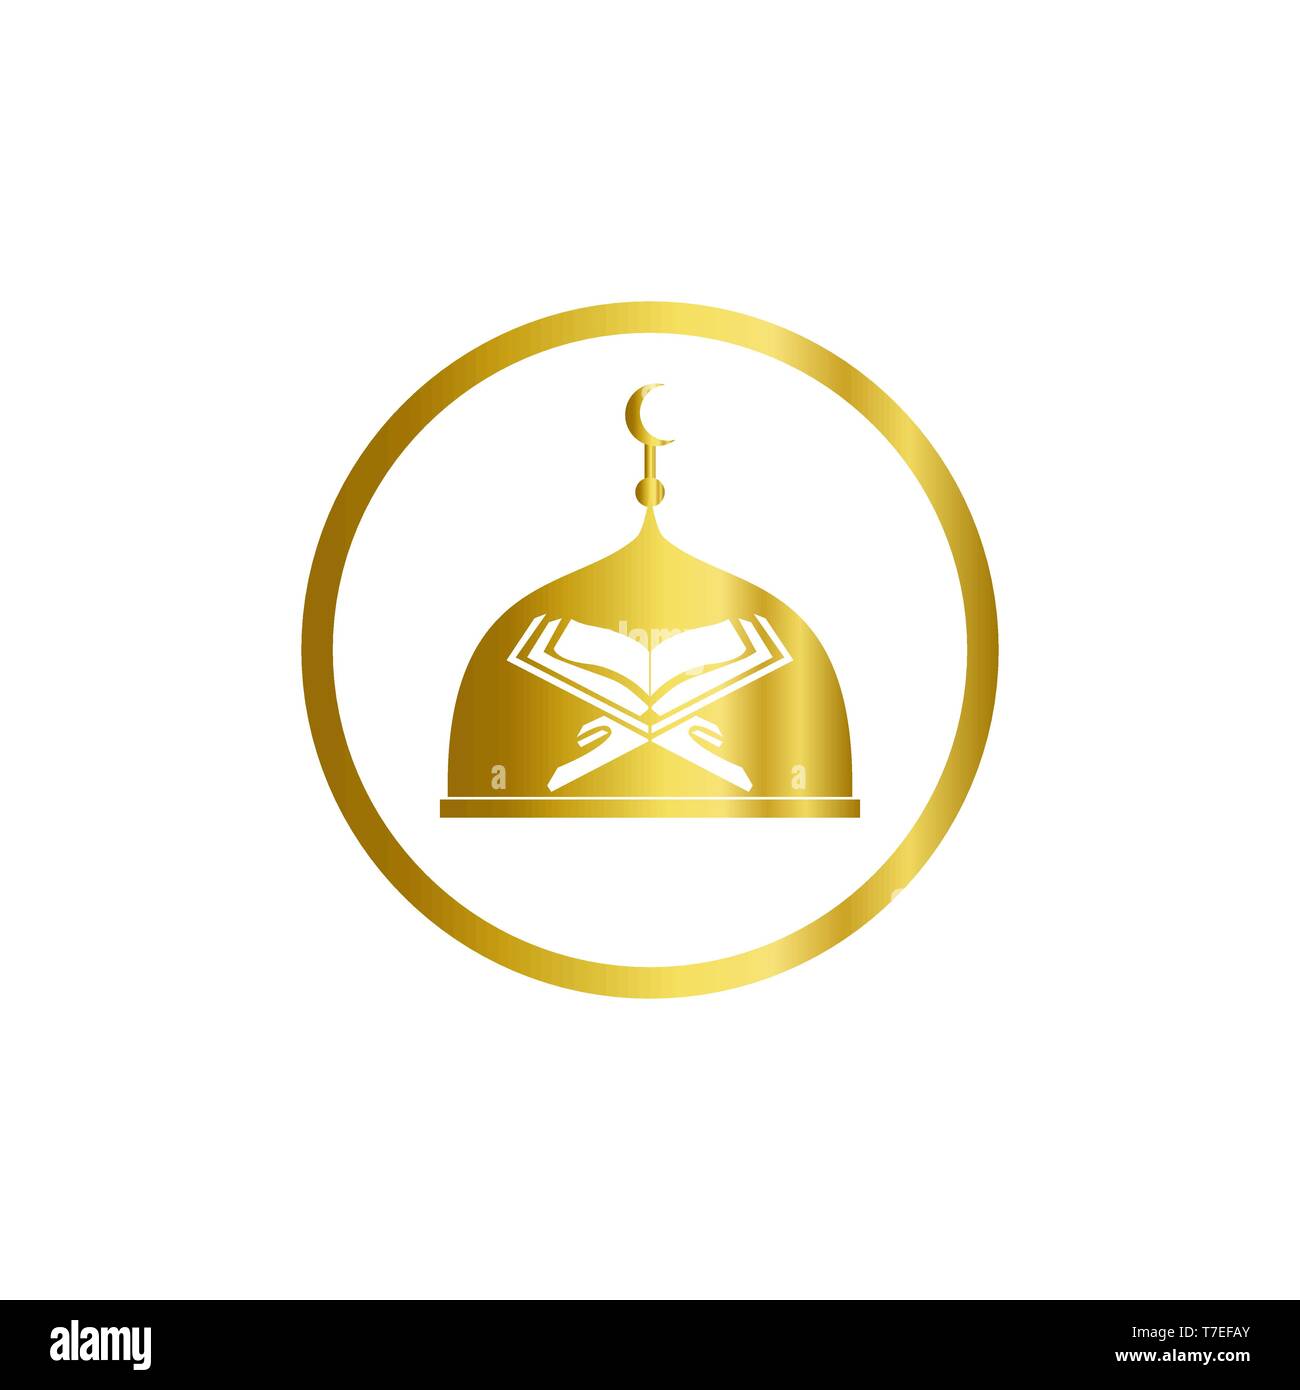 Logo Masjid và Quran vàng hiện đại sẽ khiến bạn tò mò và muốn tìm hiểu ngay lập tức. Với sự kết hợp giữa phong cách tân tiến và tính tôn giáo, logo này sẽ mang đến cho bạn một trải nghiệm độc đáo.